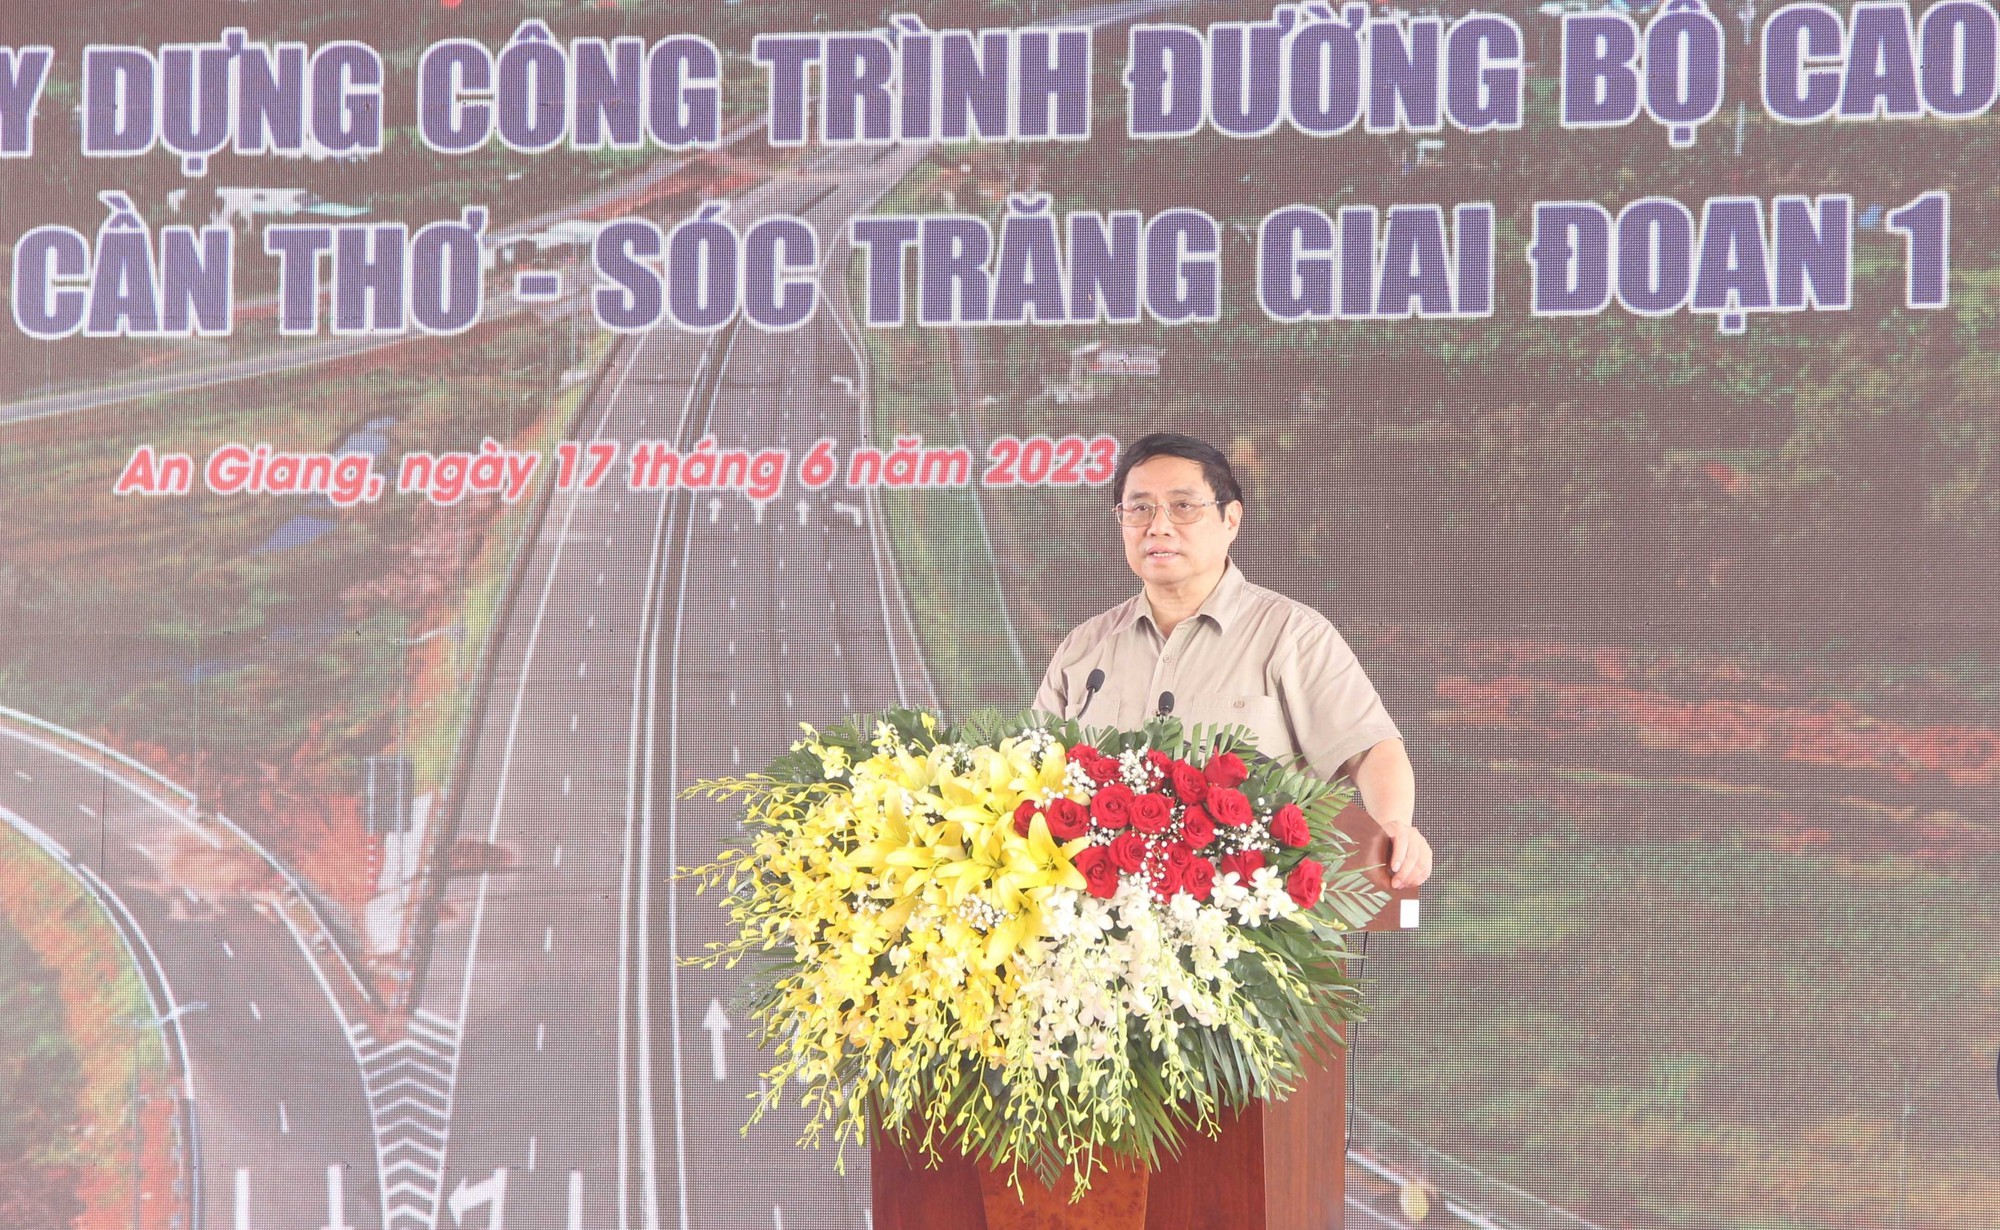 Trực tiếp khởi công cao tốc Châu Đốc - Cần Thơ - Sóc Trăng: Thủ tướng phát lệnh khởi công dự án - Ảnh 2.